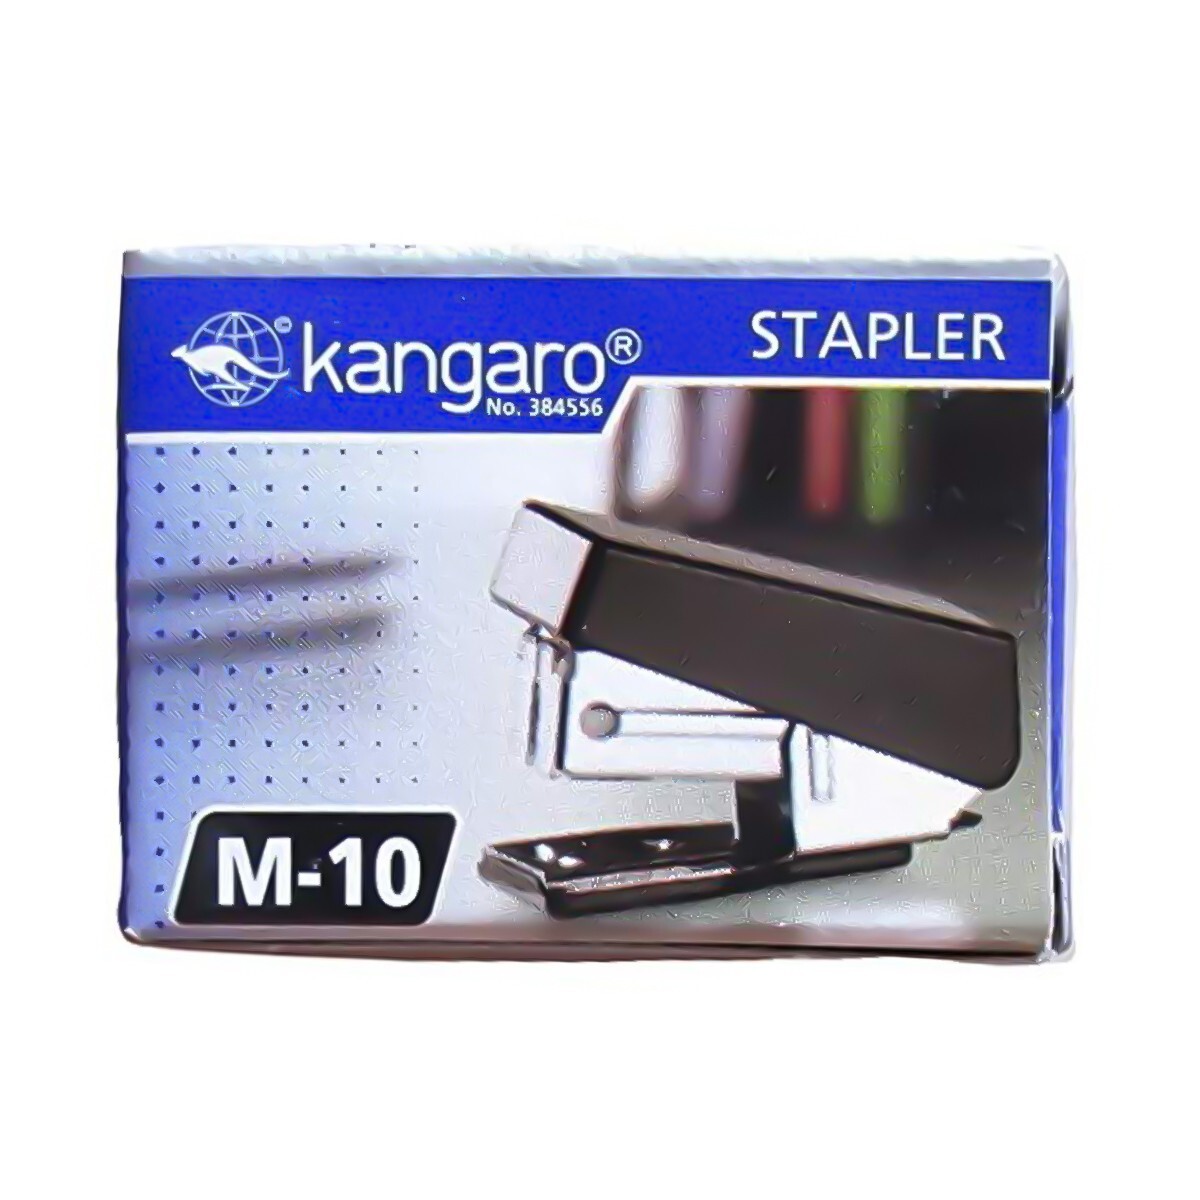 Kangaro Mini Stapler No:10-M-10